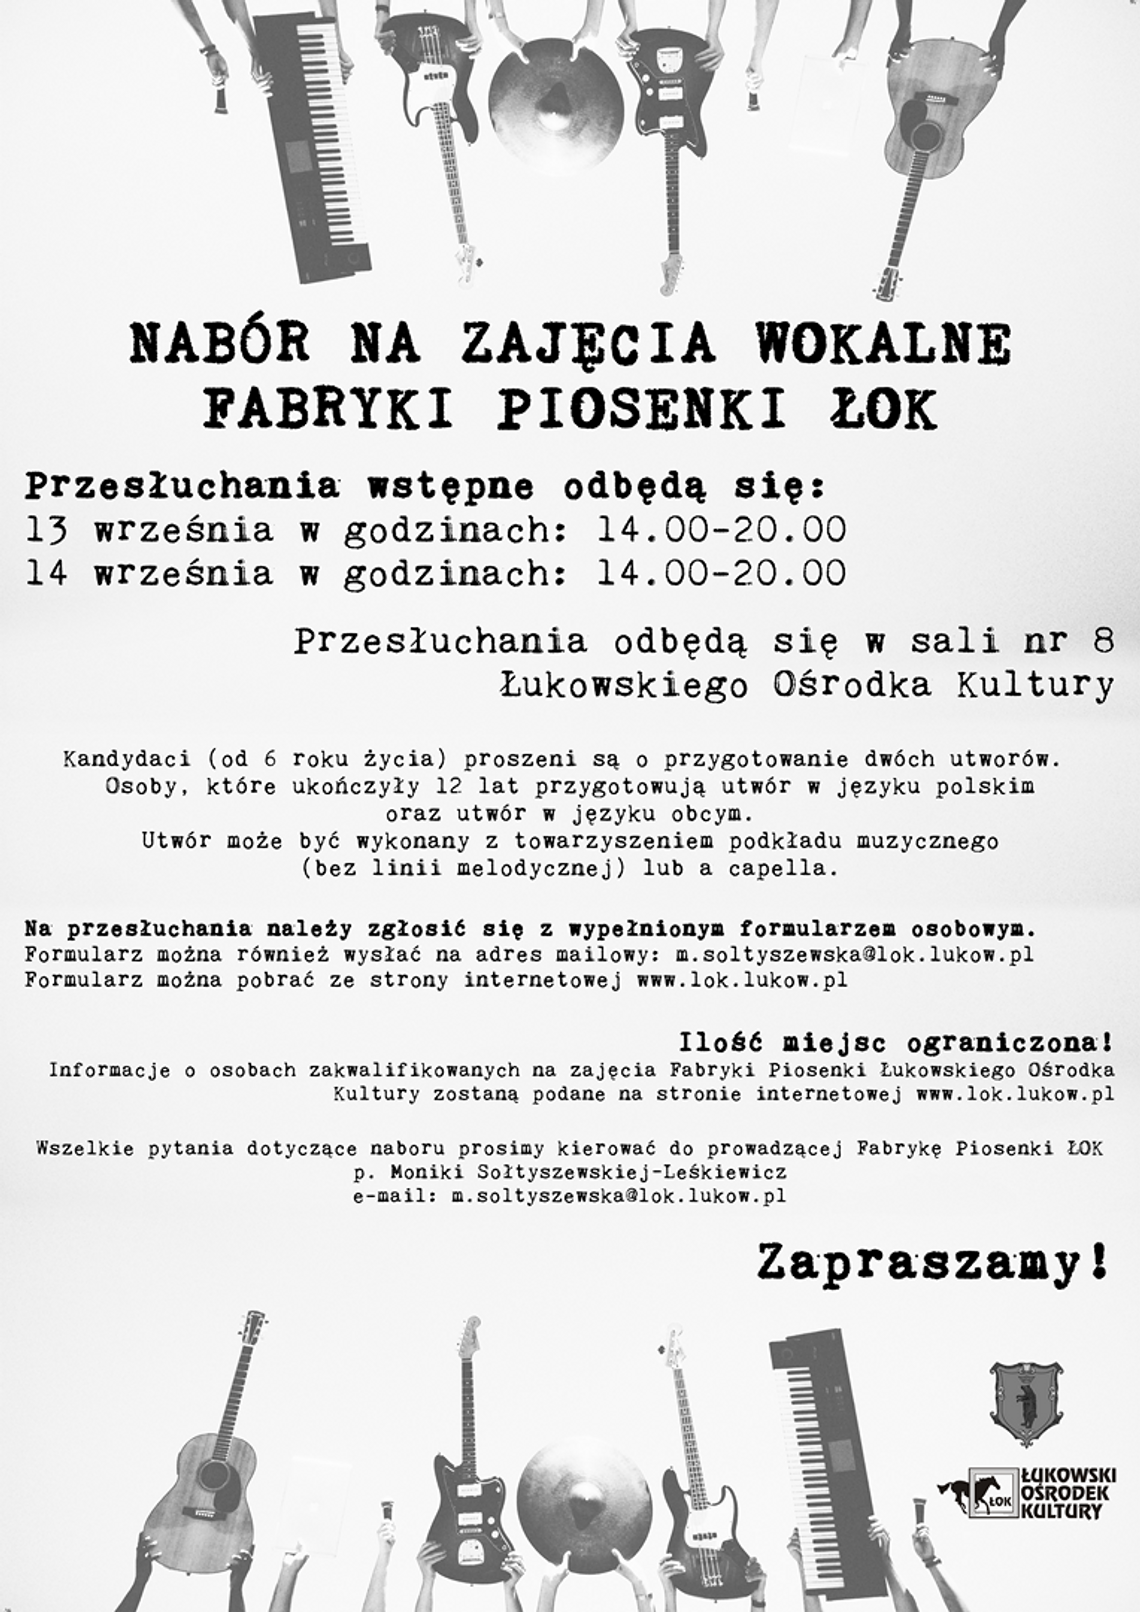 Lista przyjętych na zajęcia wokalne Fabryki Piosenki ŁOK 2018/2019